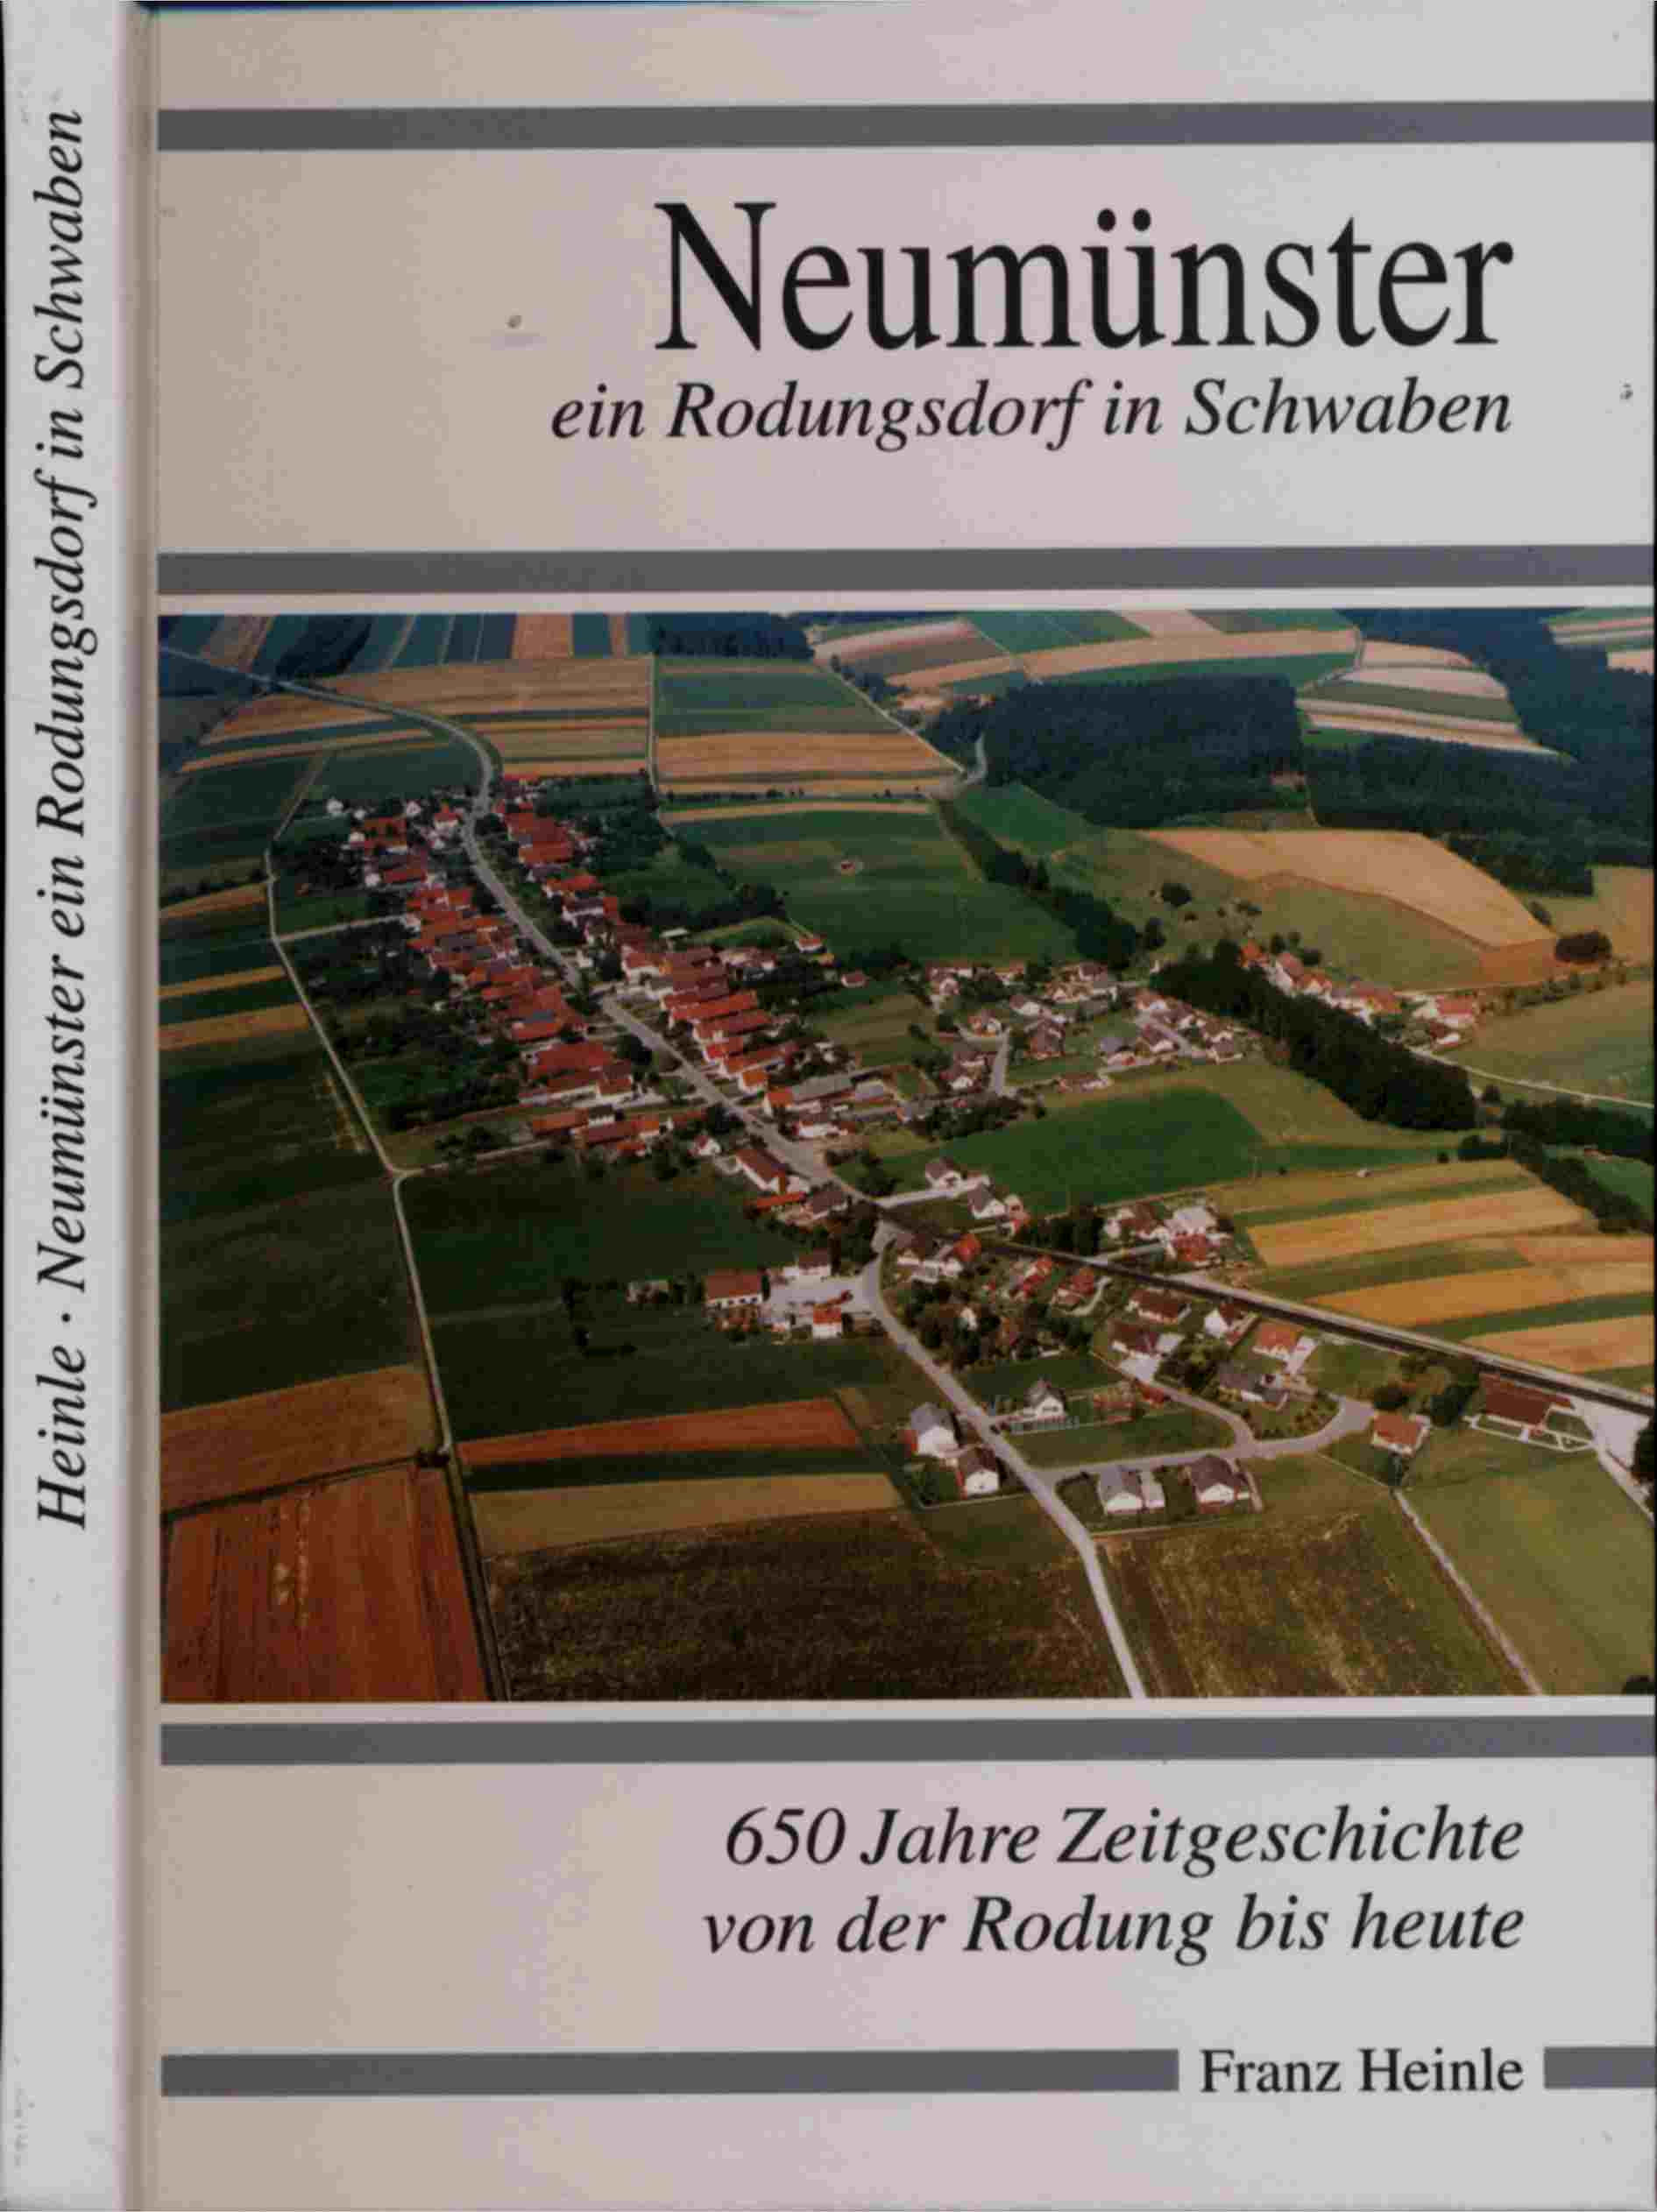 HEINLE, Franz  Neumünster, ein Rodungsdorf in Schwaben. 650 Jahre Zeitgeschichte von der Rodung bis heute. 